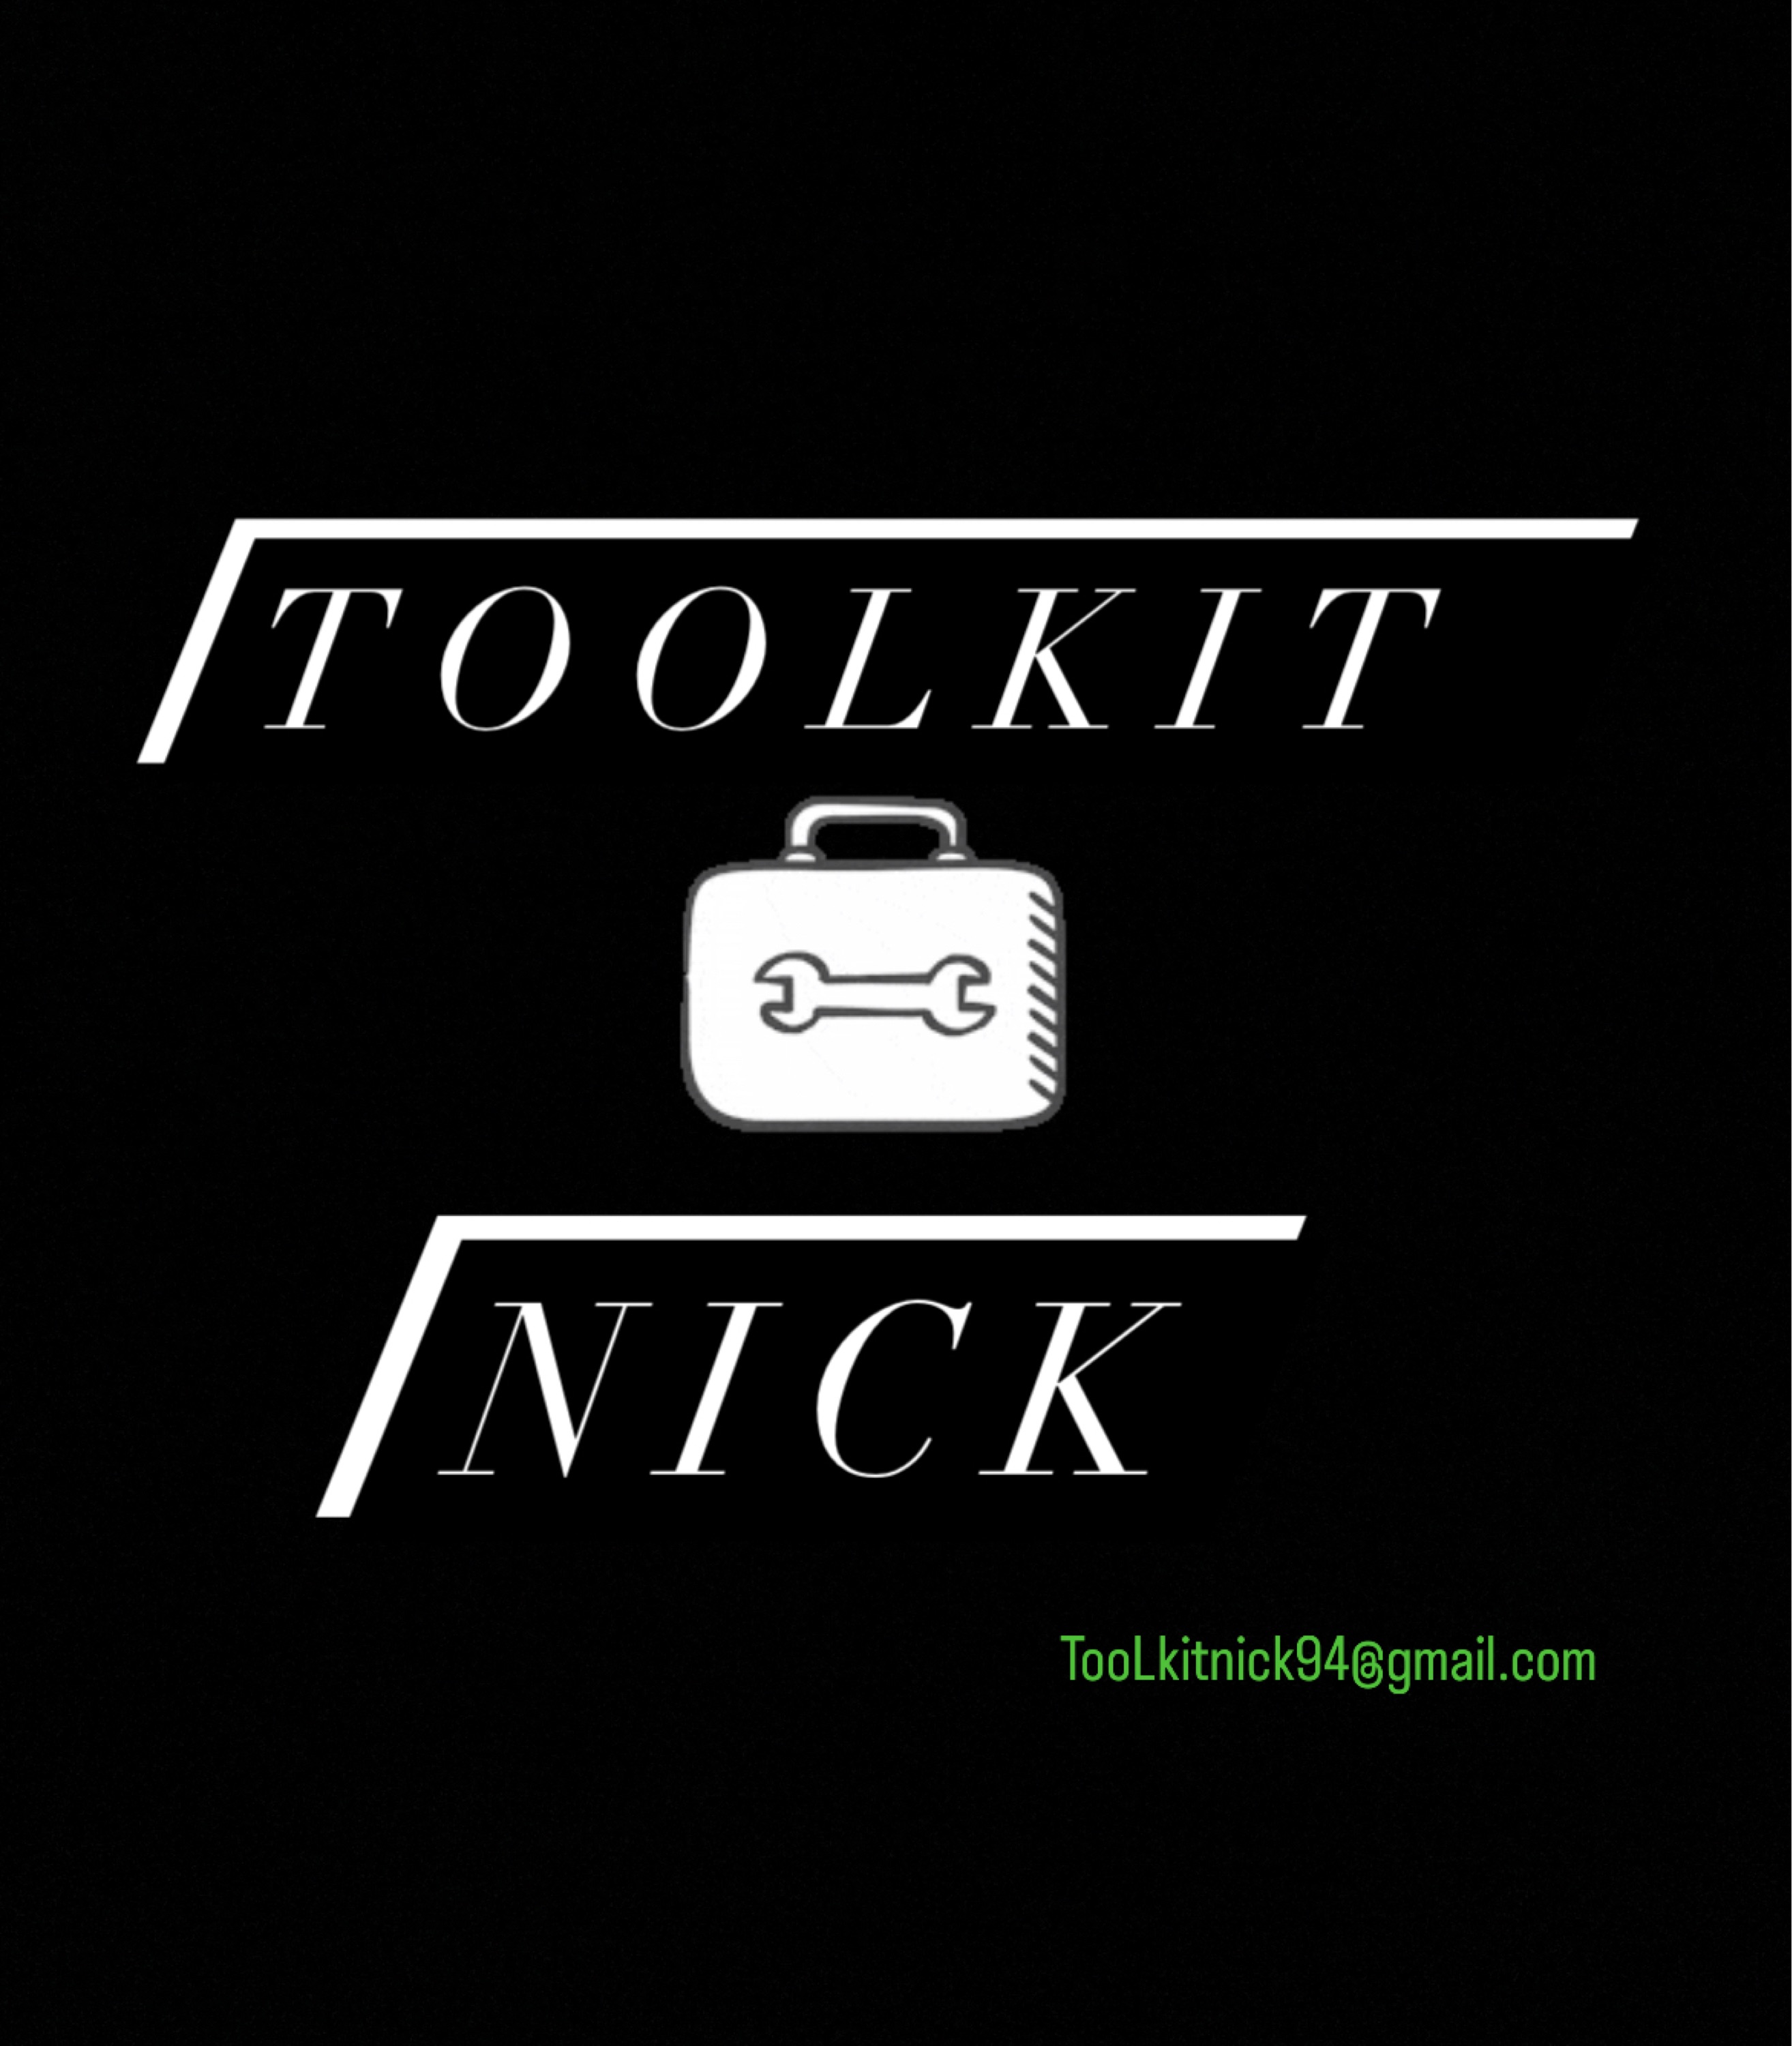 ToolKit Nick Logo